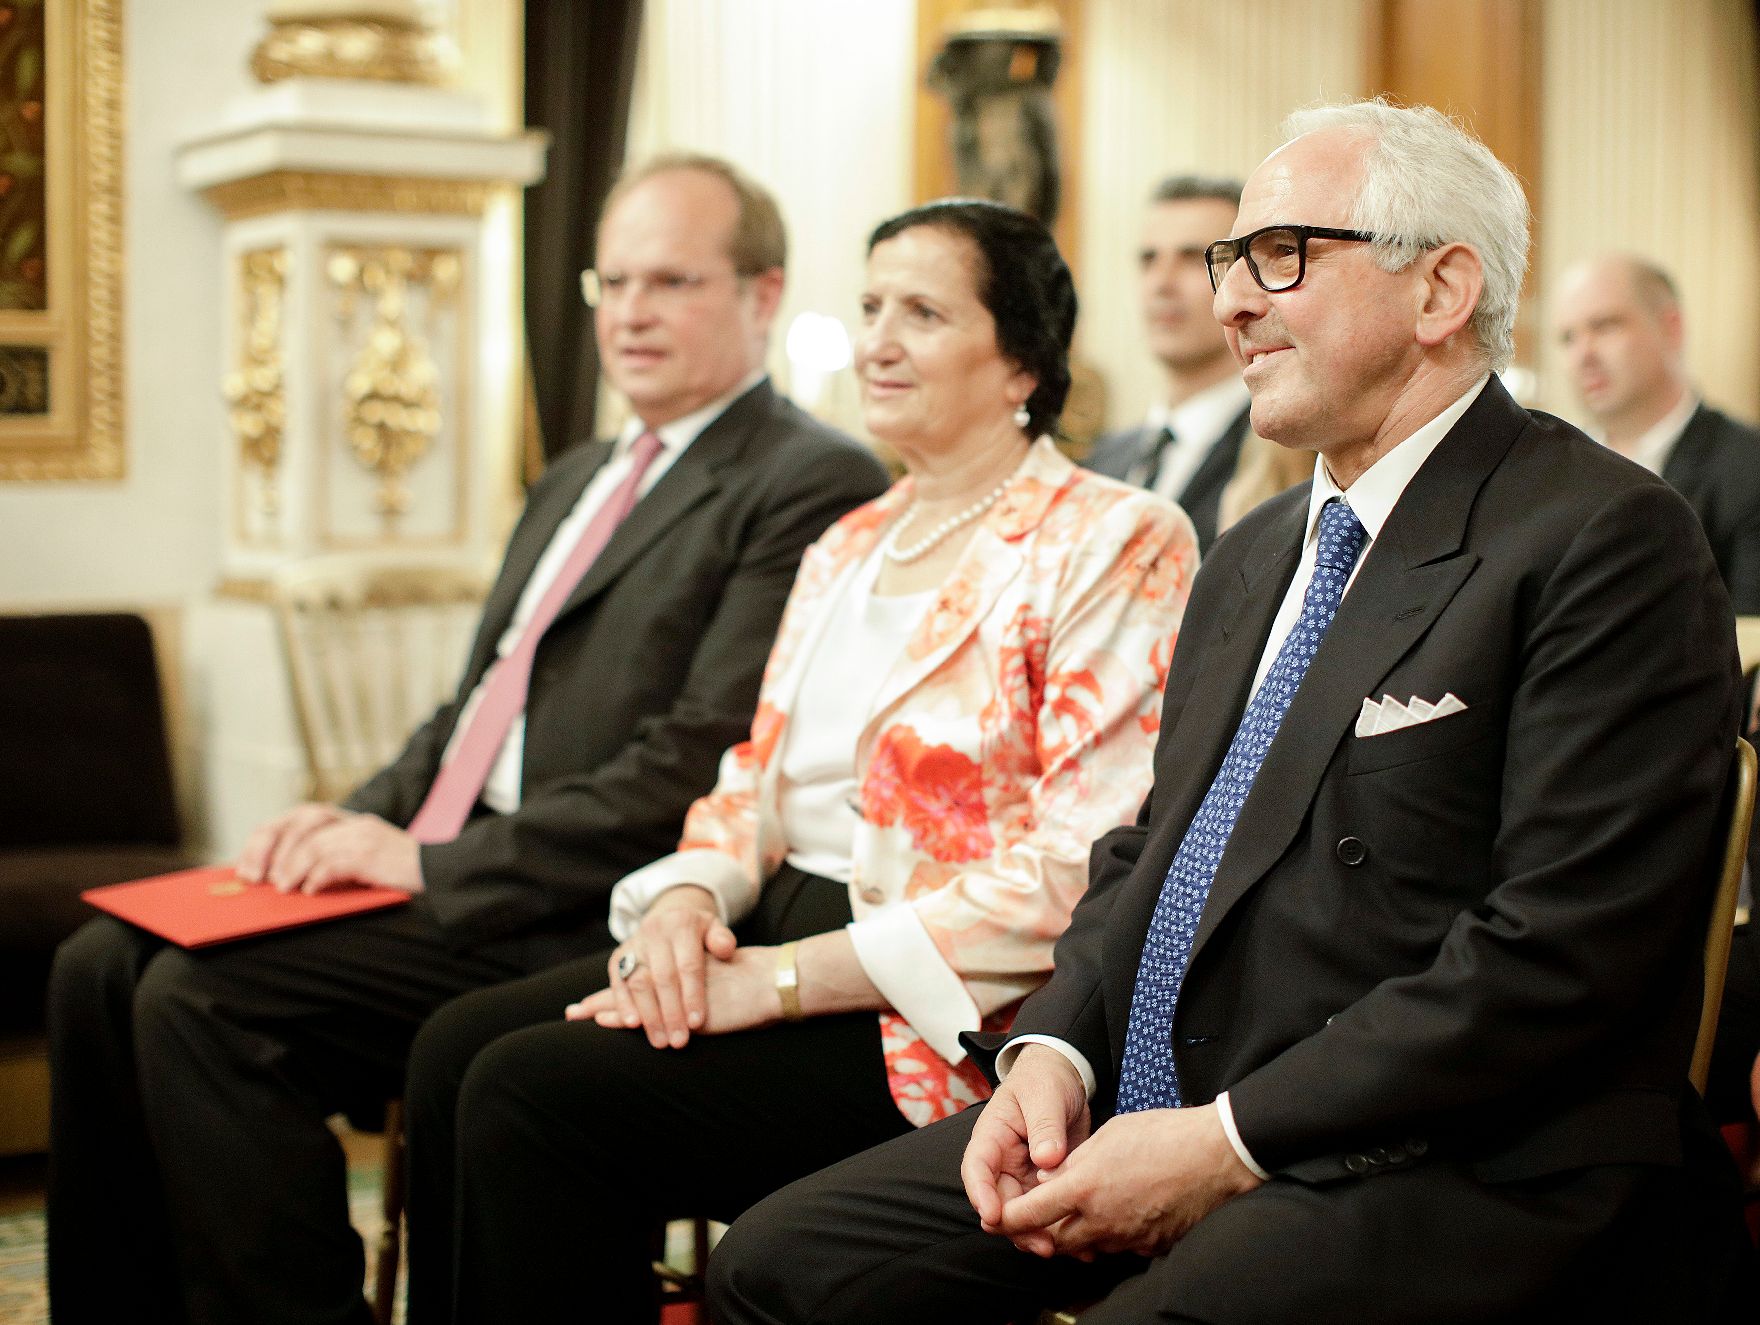 Am 21. Juni 2018 fand die Überreichung des Goldenen Ehrenzeichens für Verdienste um die Republik Österreich an Aki Nuredini (r.) statt. Im Bild mit seiner Gattin (m.).